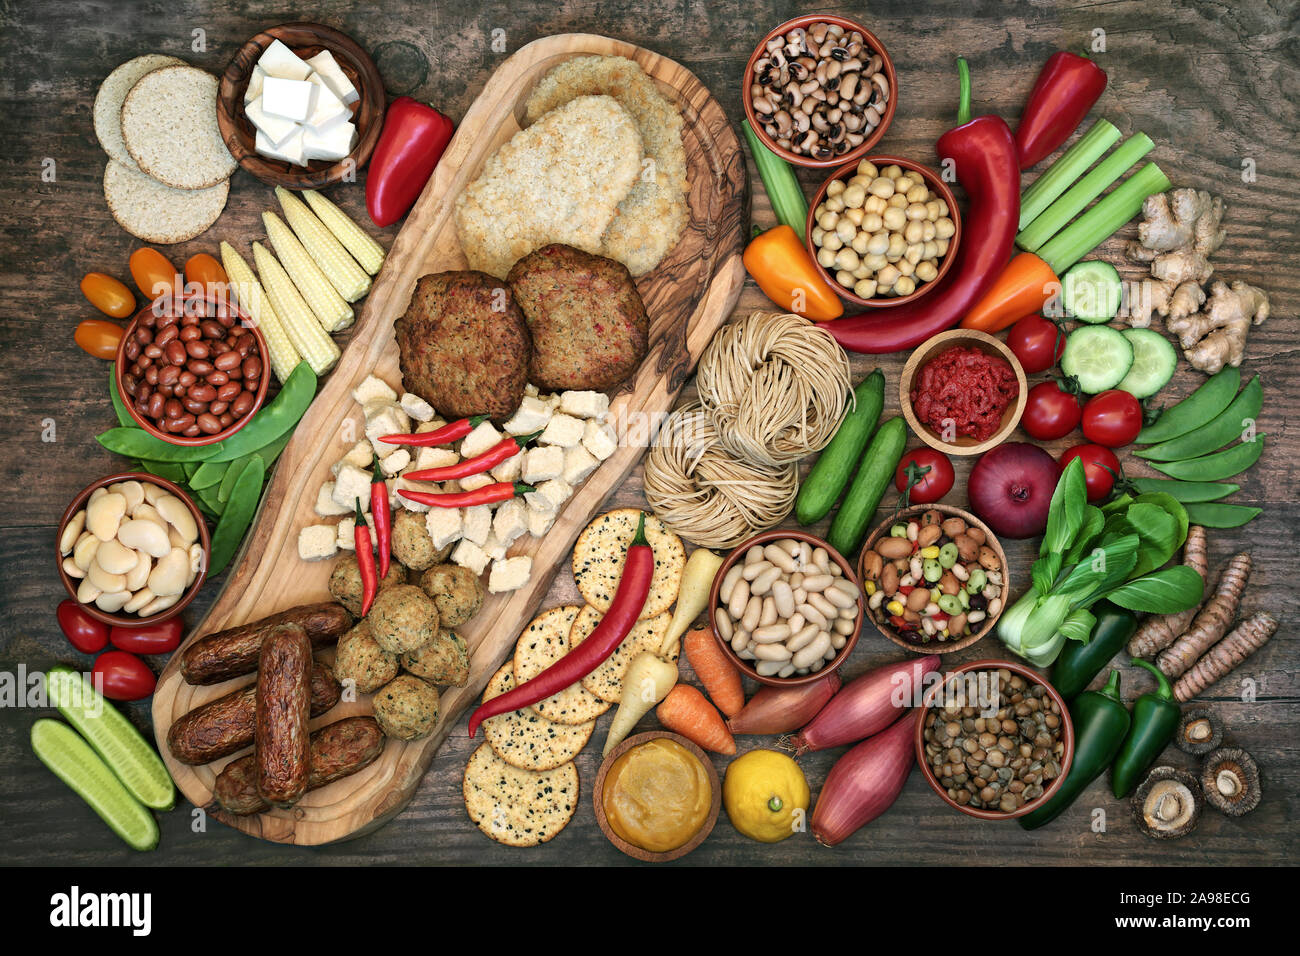 Pour manger la nourriture végétalienne éthique & bonne santé avec quorn substituts riches en protéines avec des fruits, légumes et produits céréaliers. Banque D'Images